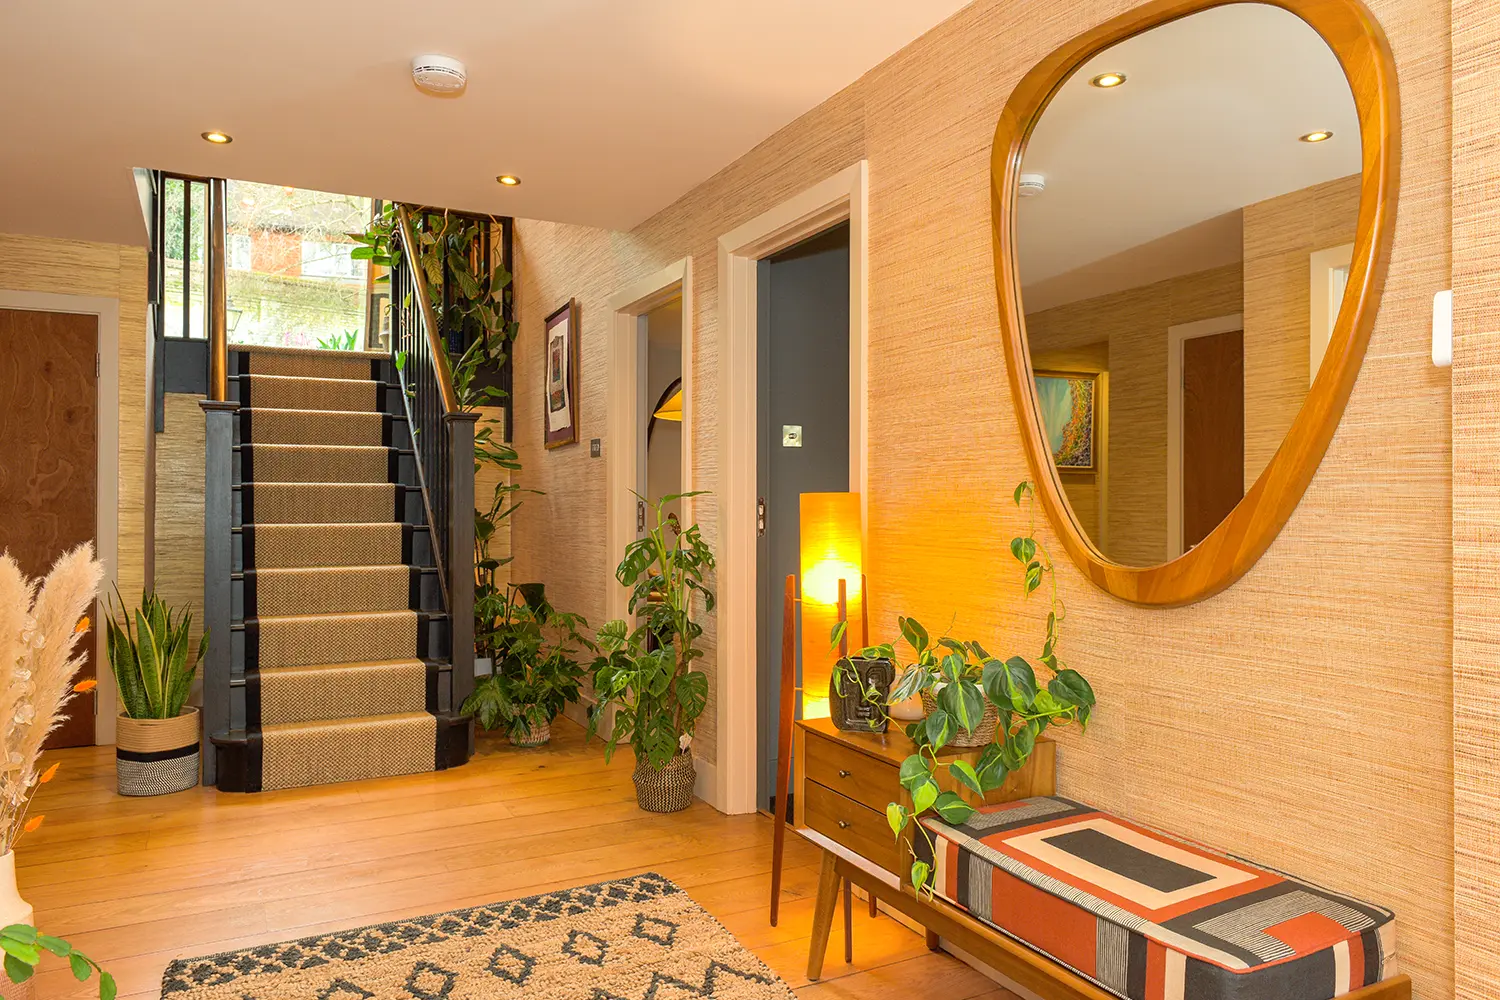 Mid-Century Modern home hallway interior design